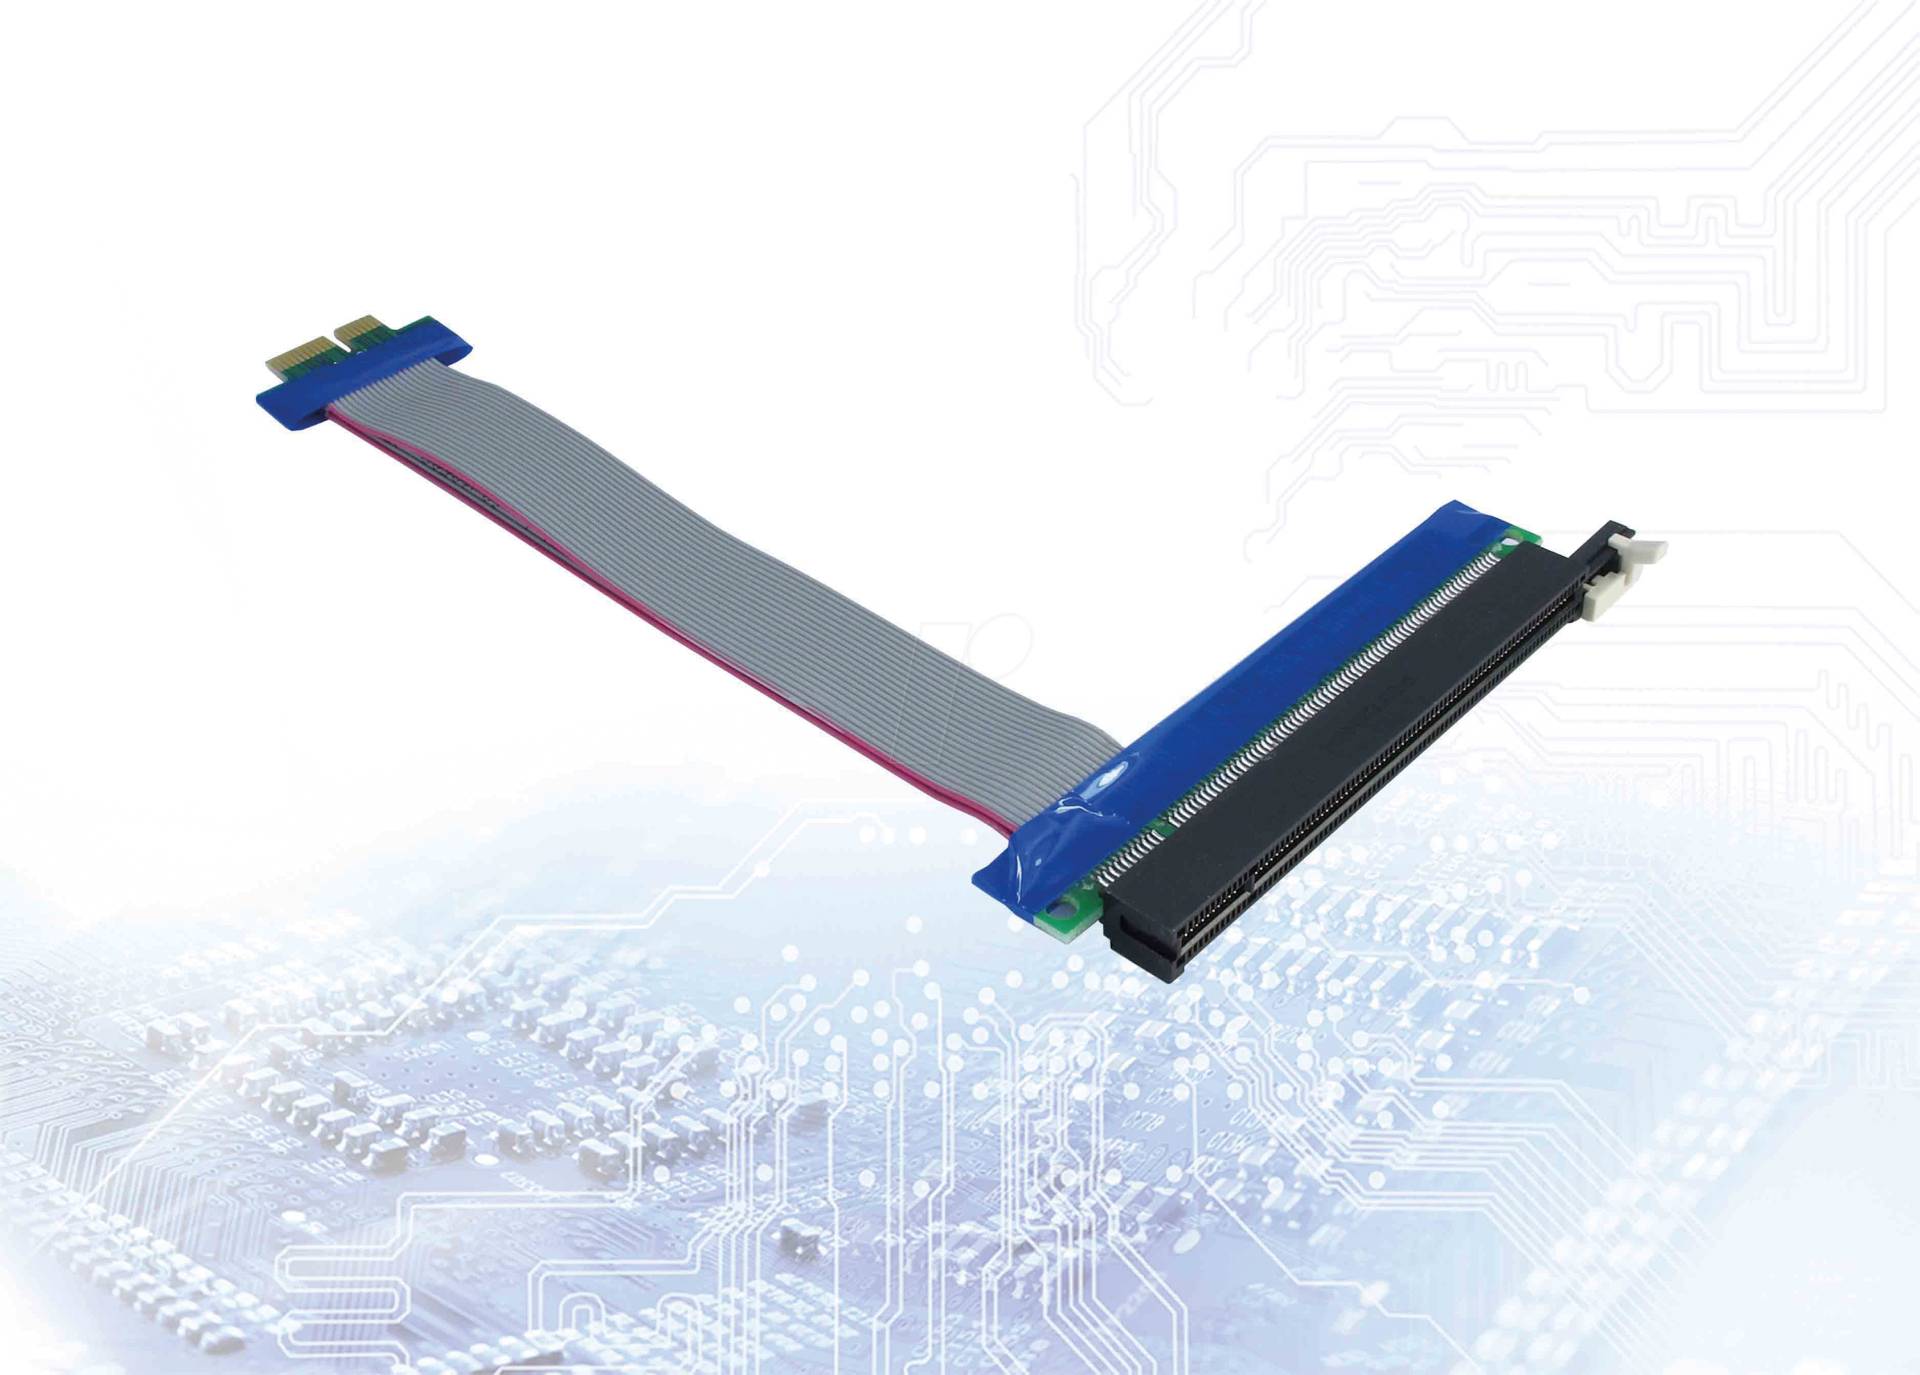 IT88885365 - Extender Kabel PCIe x1 > PCIe x16, 15 cm von Inter-Tech